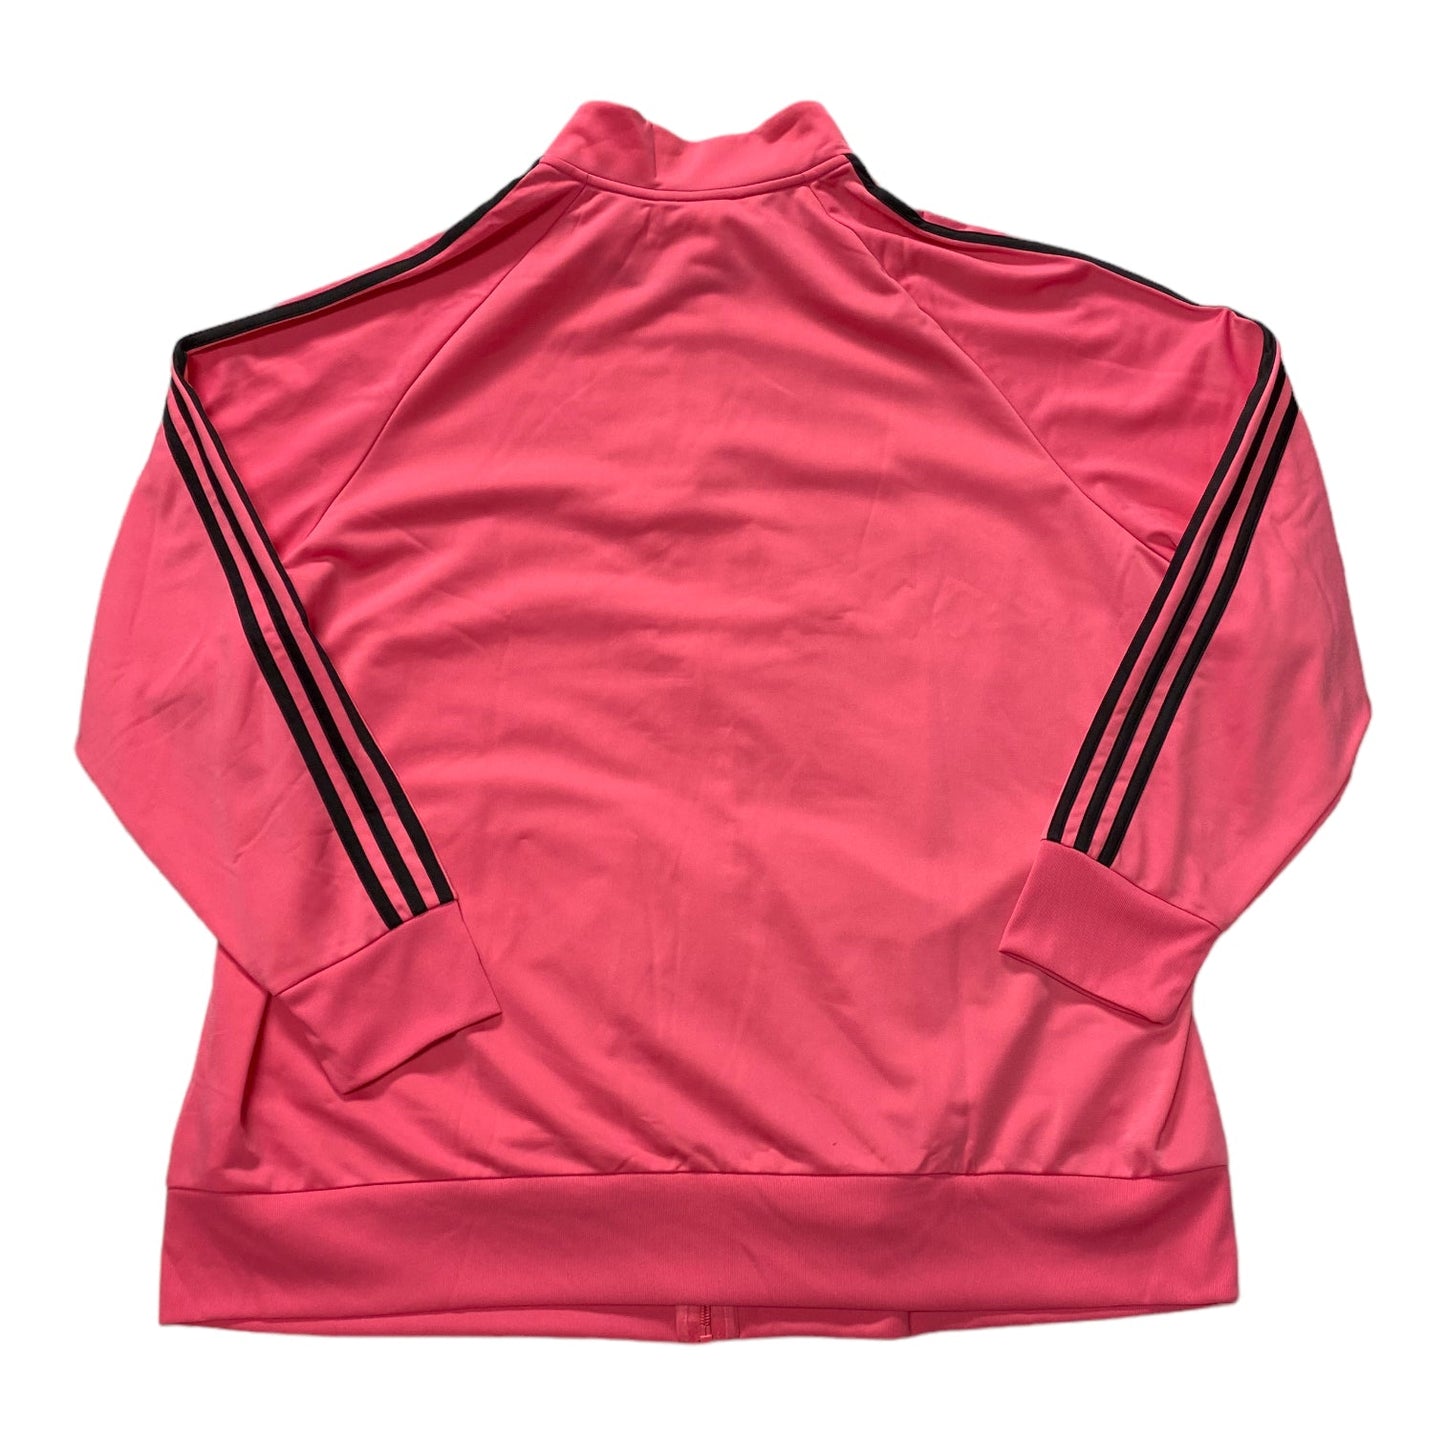 Pink Athletic Jacket Adidas, Size 4x